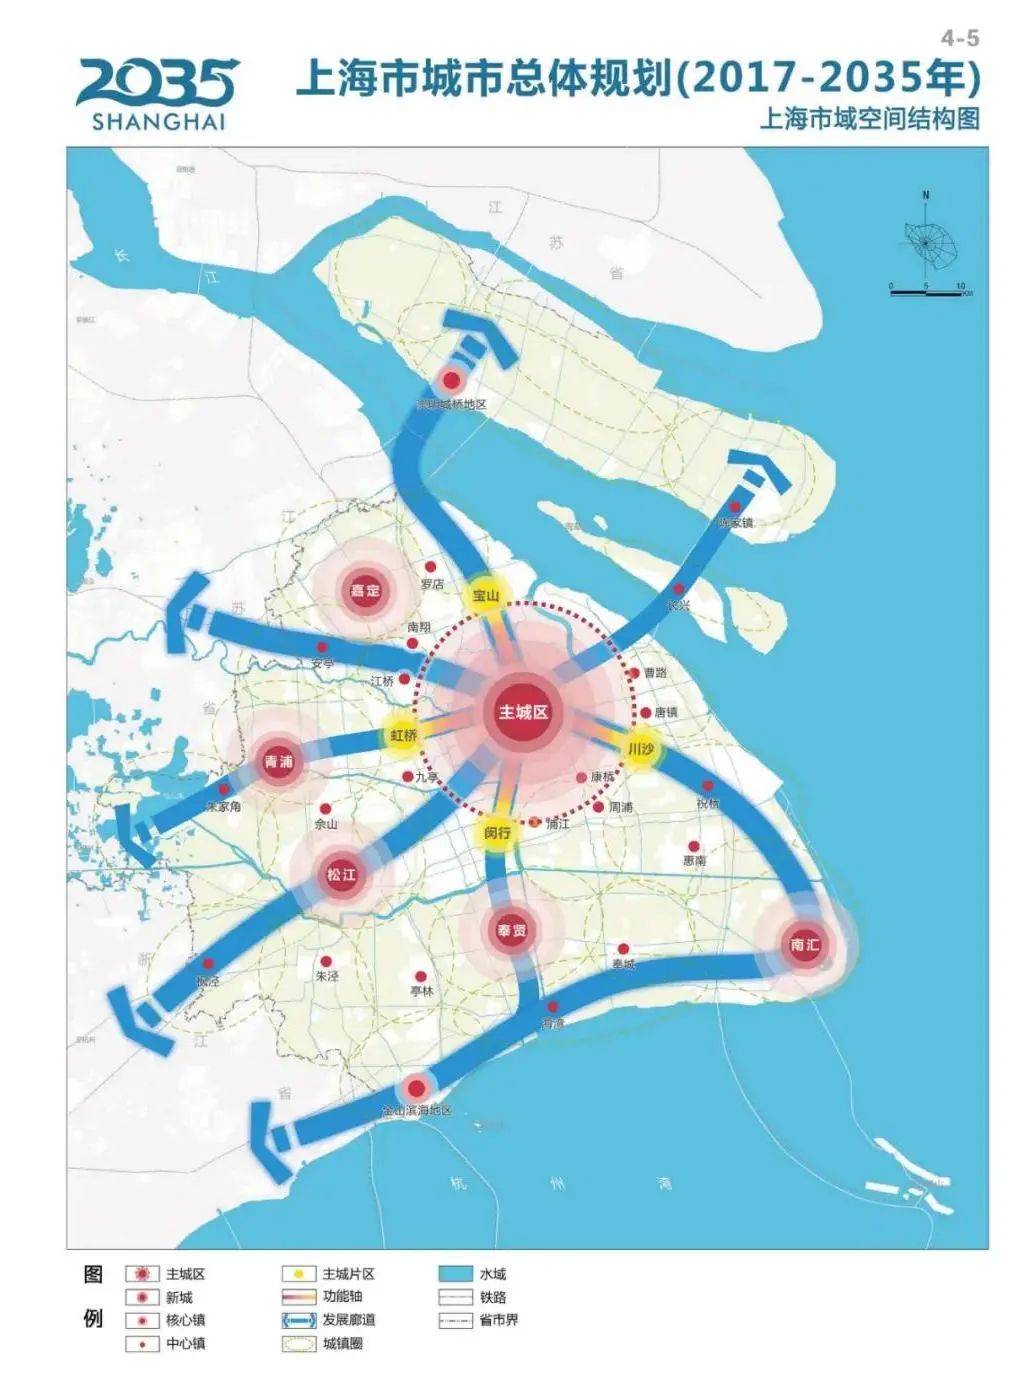 1 松江新城未来可期 在"上海2035年"规划中 已经明确公布了上海将完善